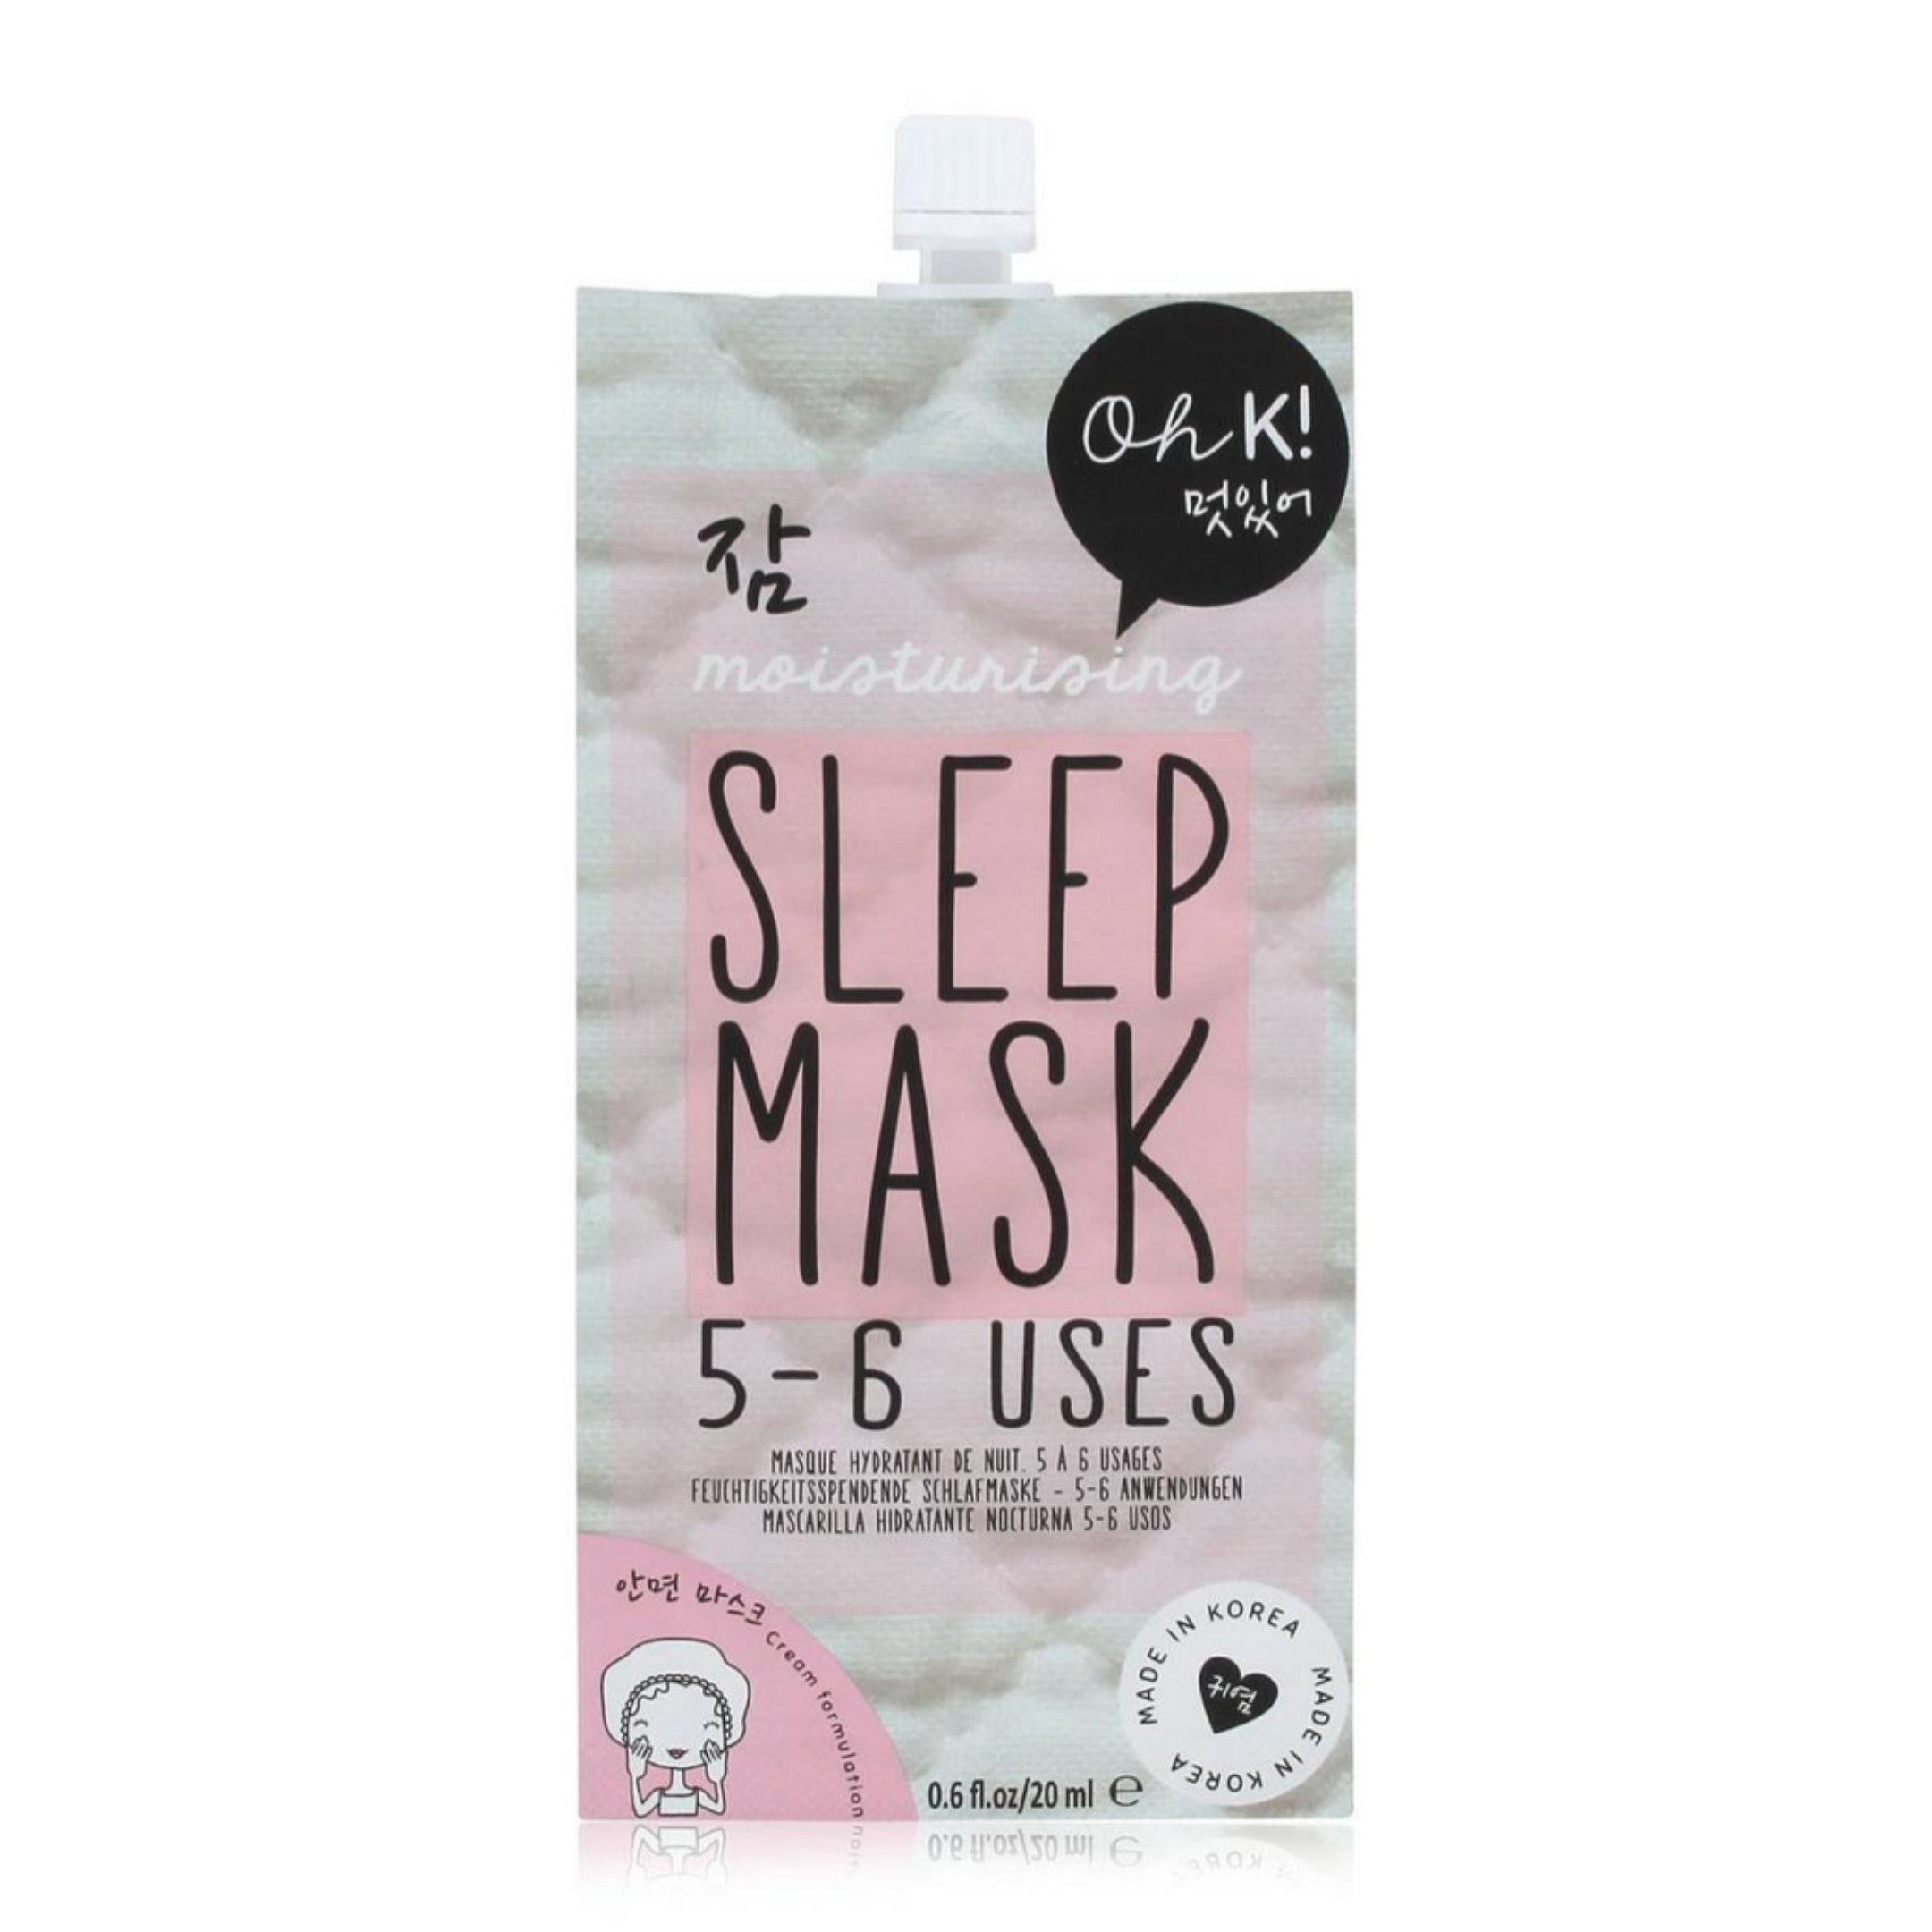 Oh K! Sleep Travel Size Face Mask